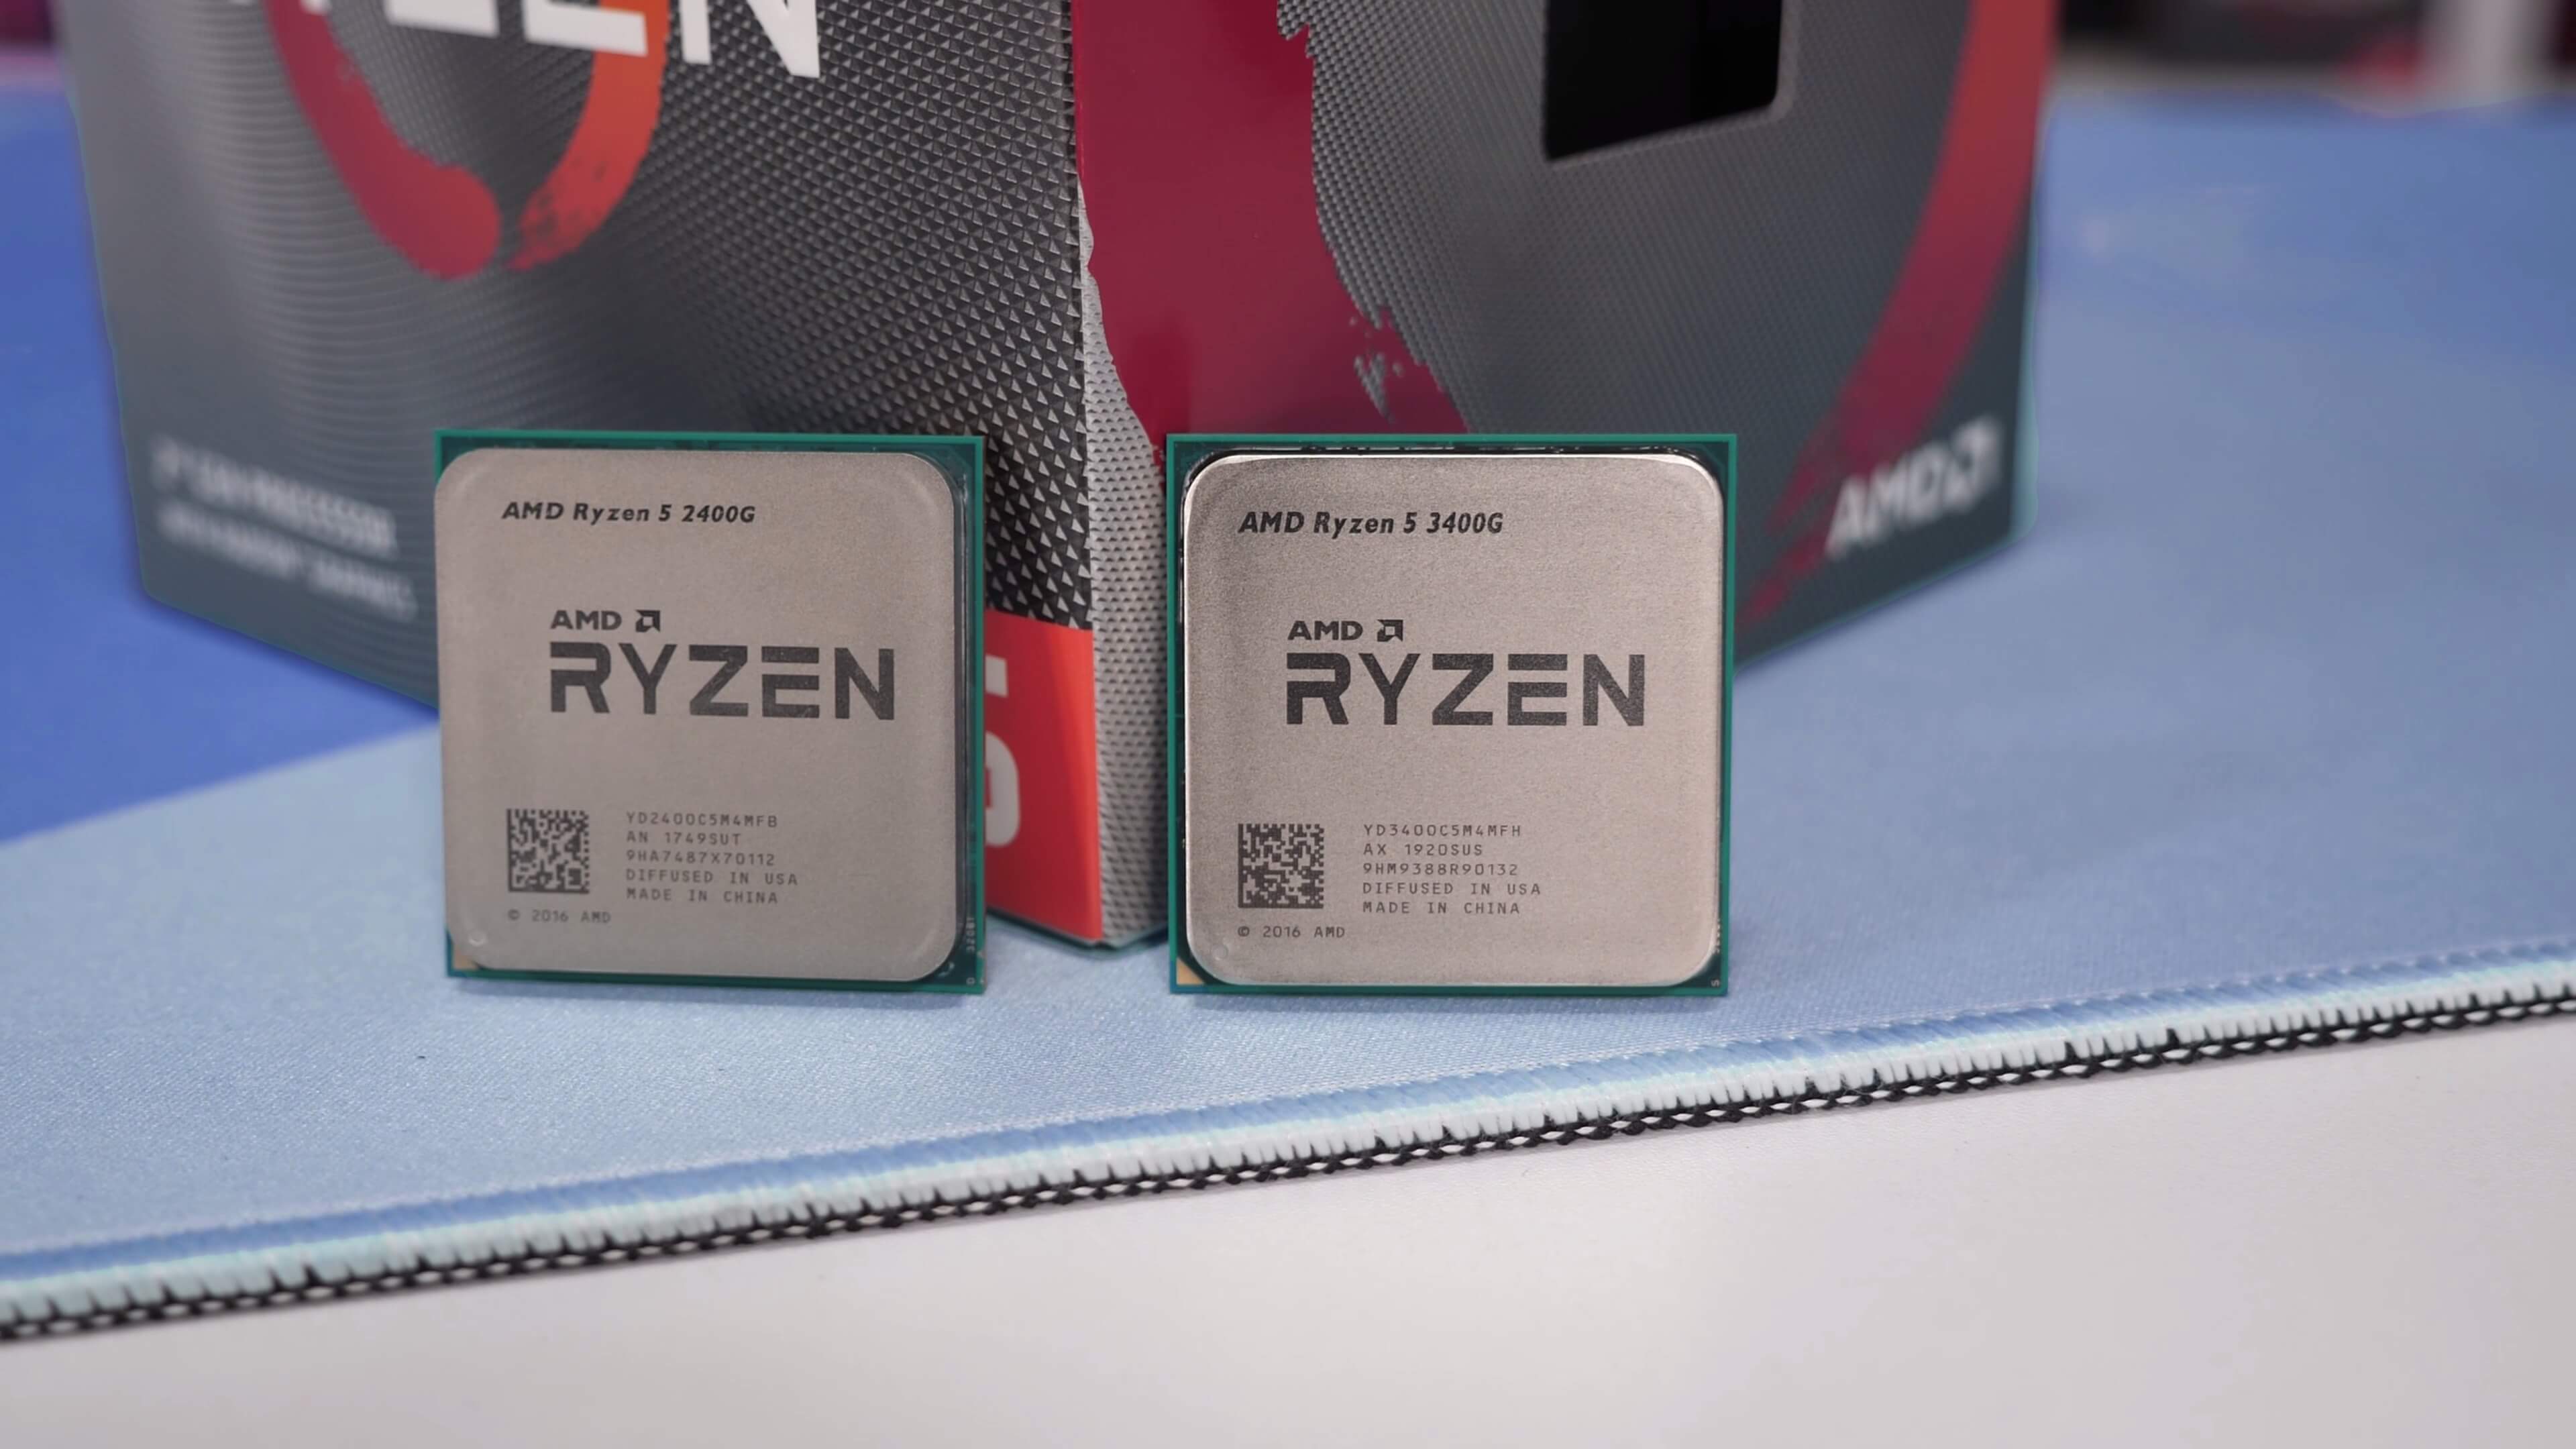 Amd ryzen 7 pro купить. Процессор AMD Ryzen 5 3400g. Процессор AMD Ryzen 5 Pro 2400g. AMD Ryzen 5 5600g. Процессор AMD 3 3200g.